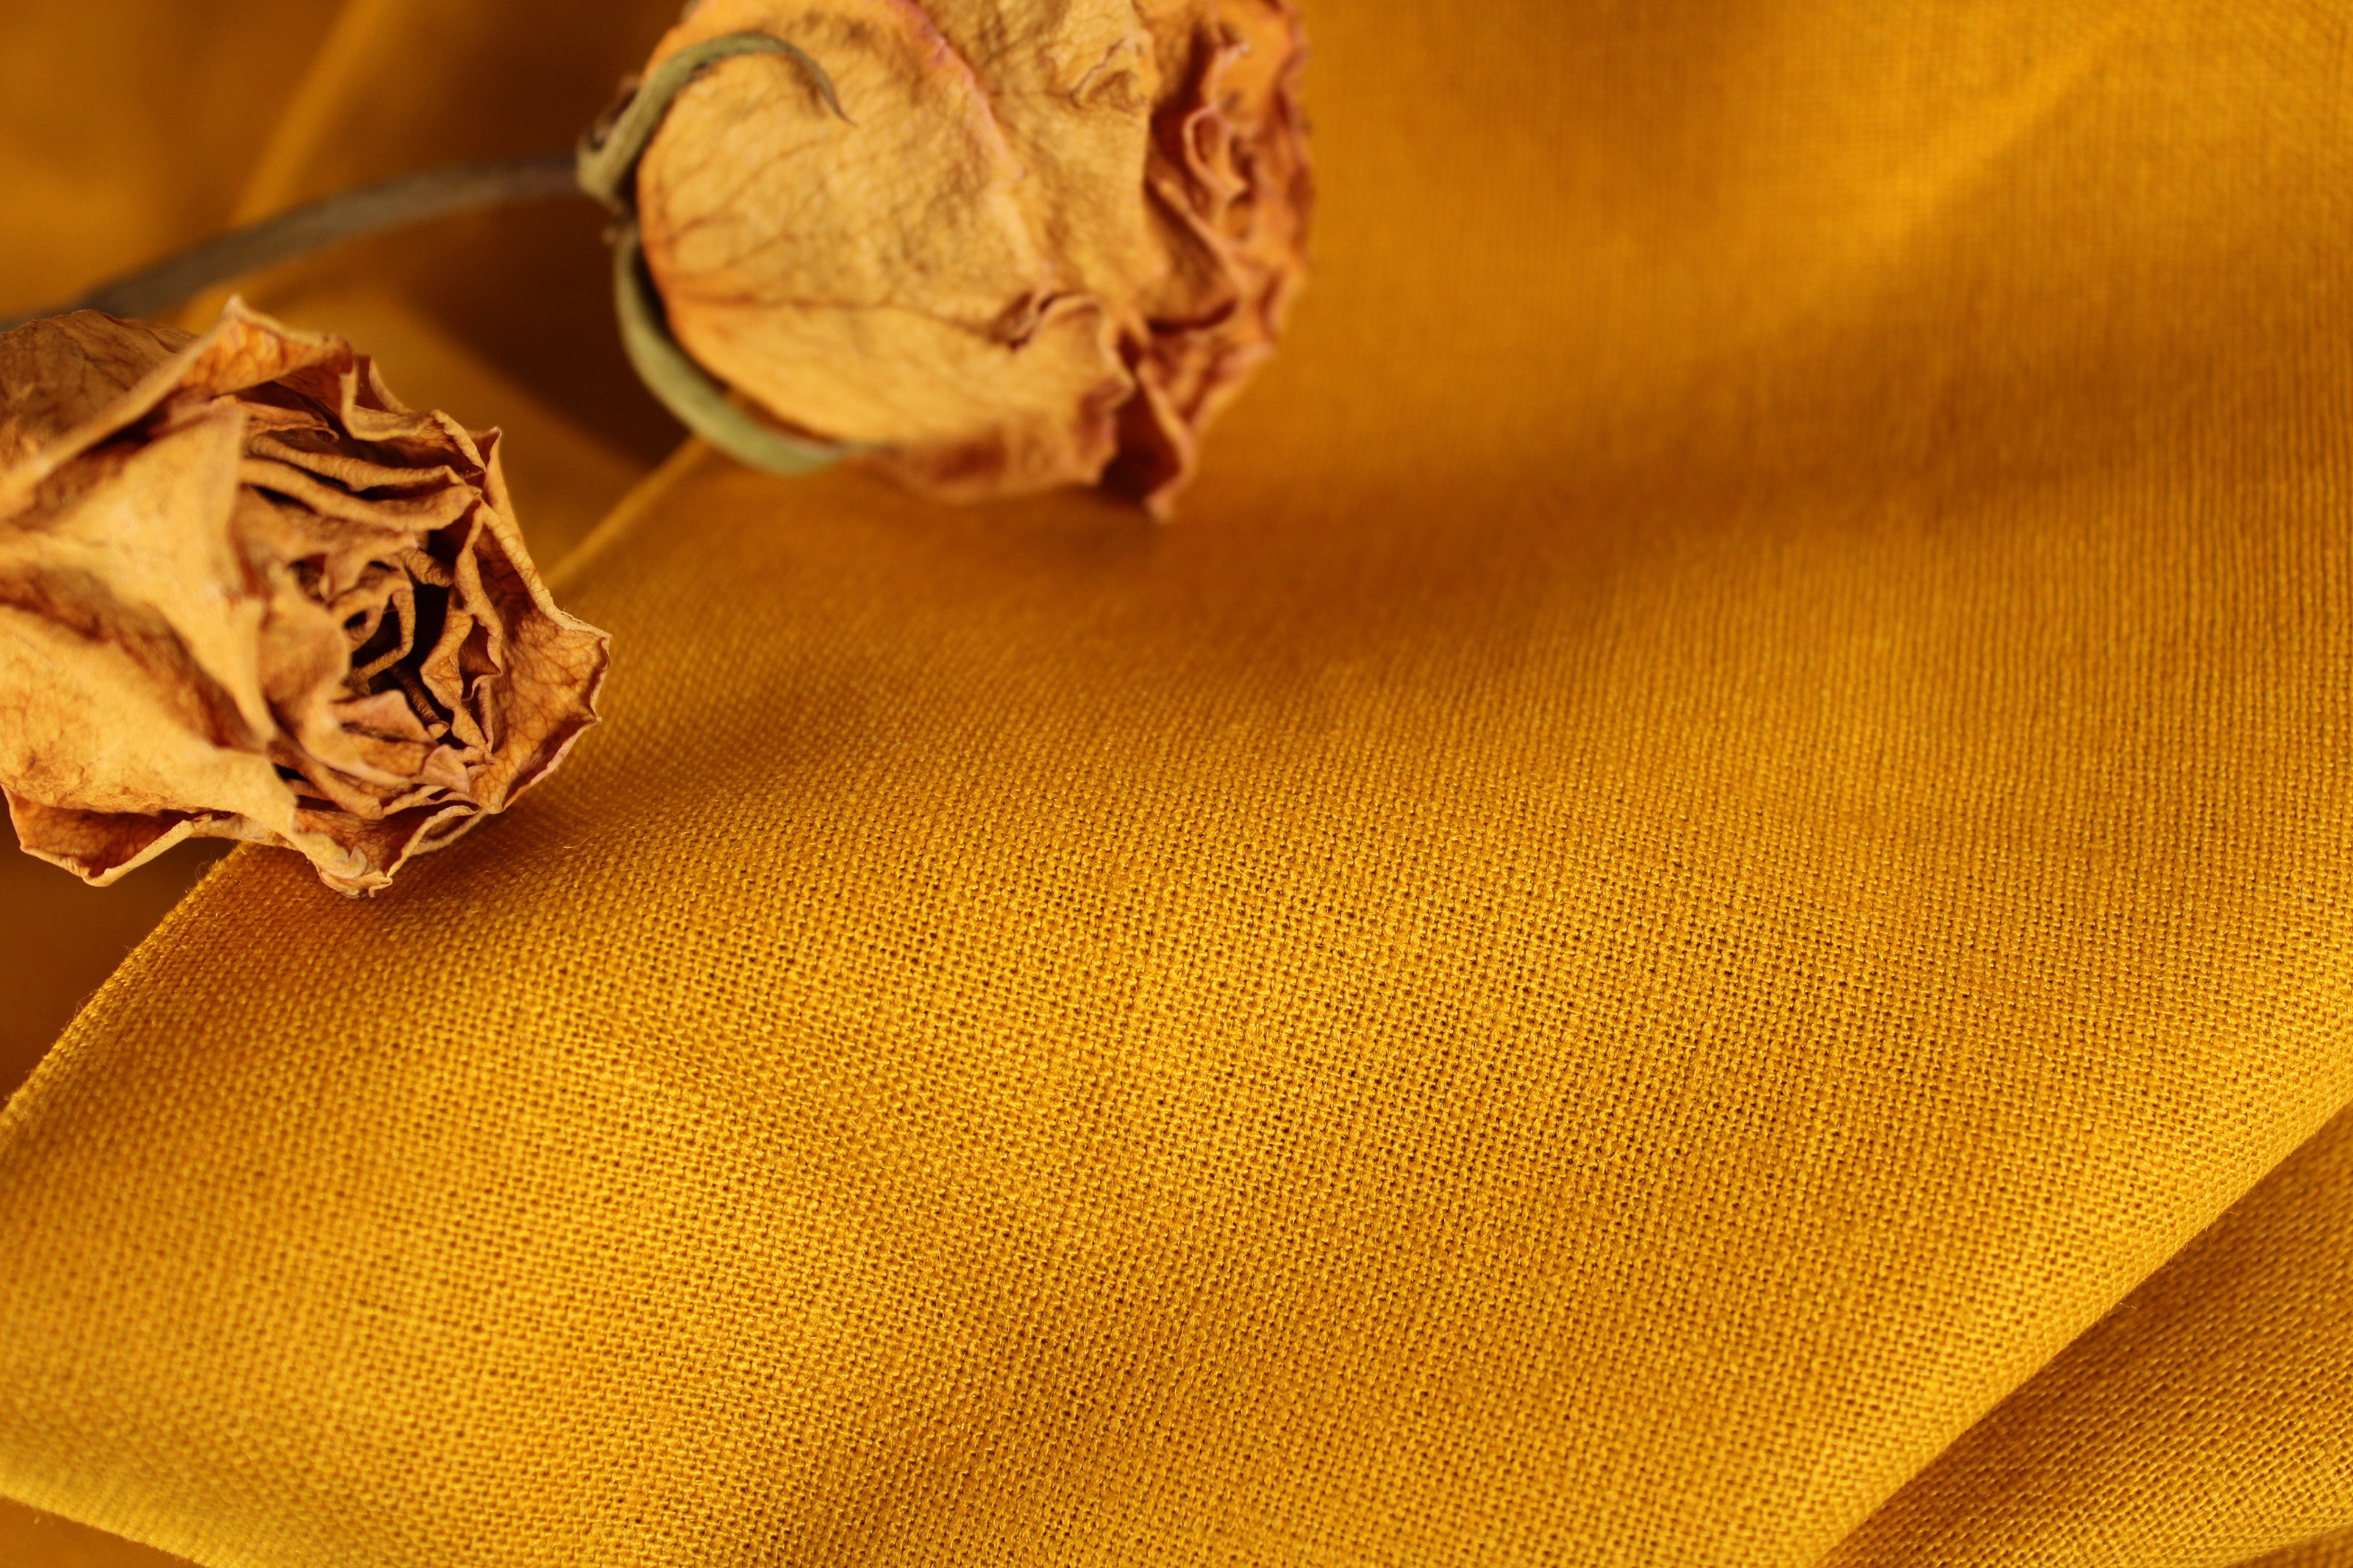 WHOLESALE 100% linen fabric / Linen Fabric Wholesale Direct / Linen by the Bolt / Arrowwood linen fabric